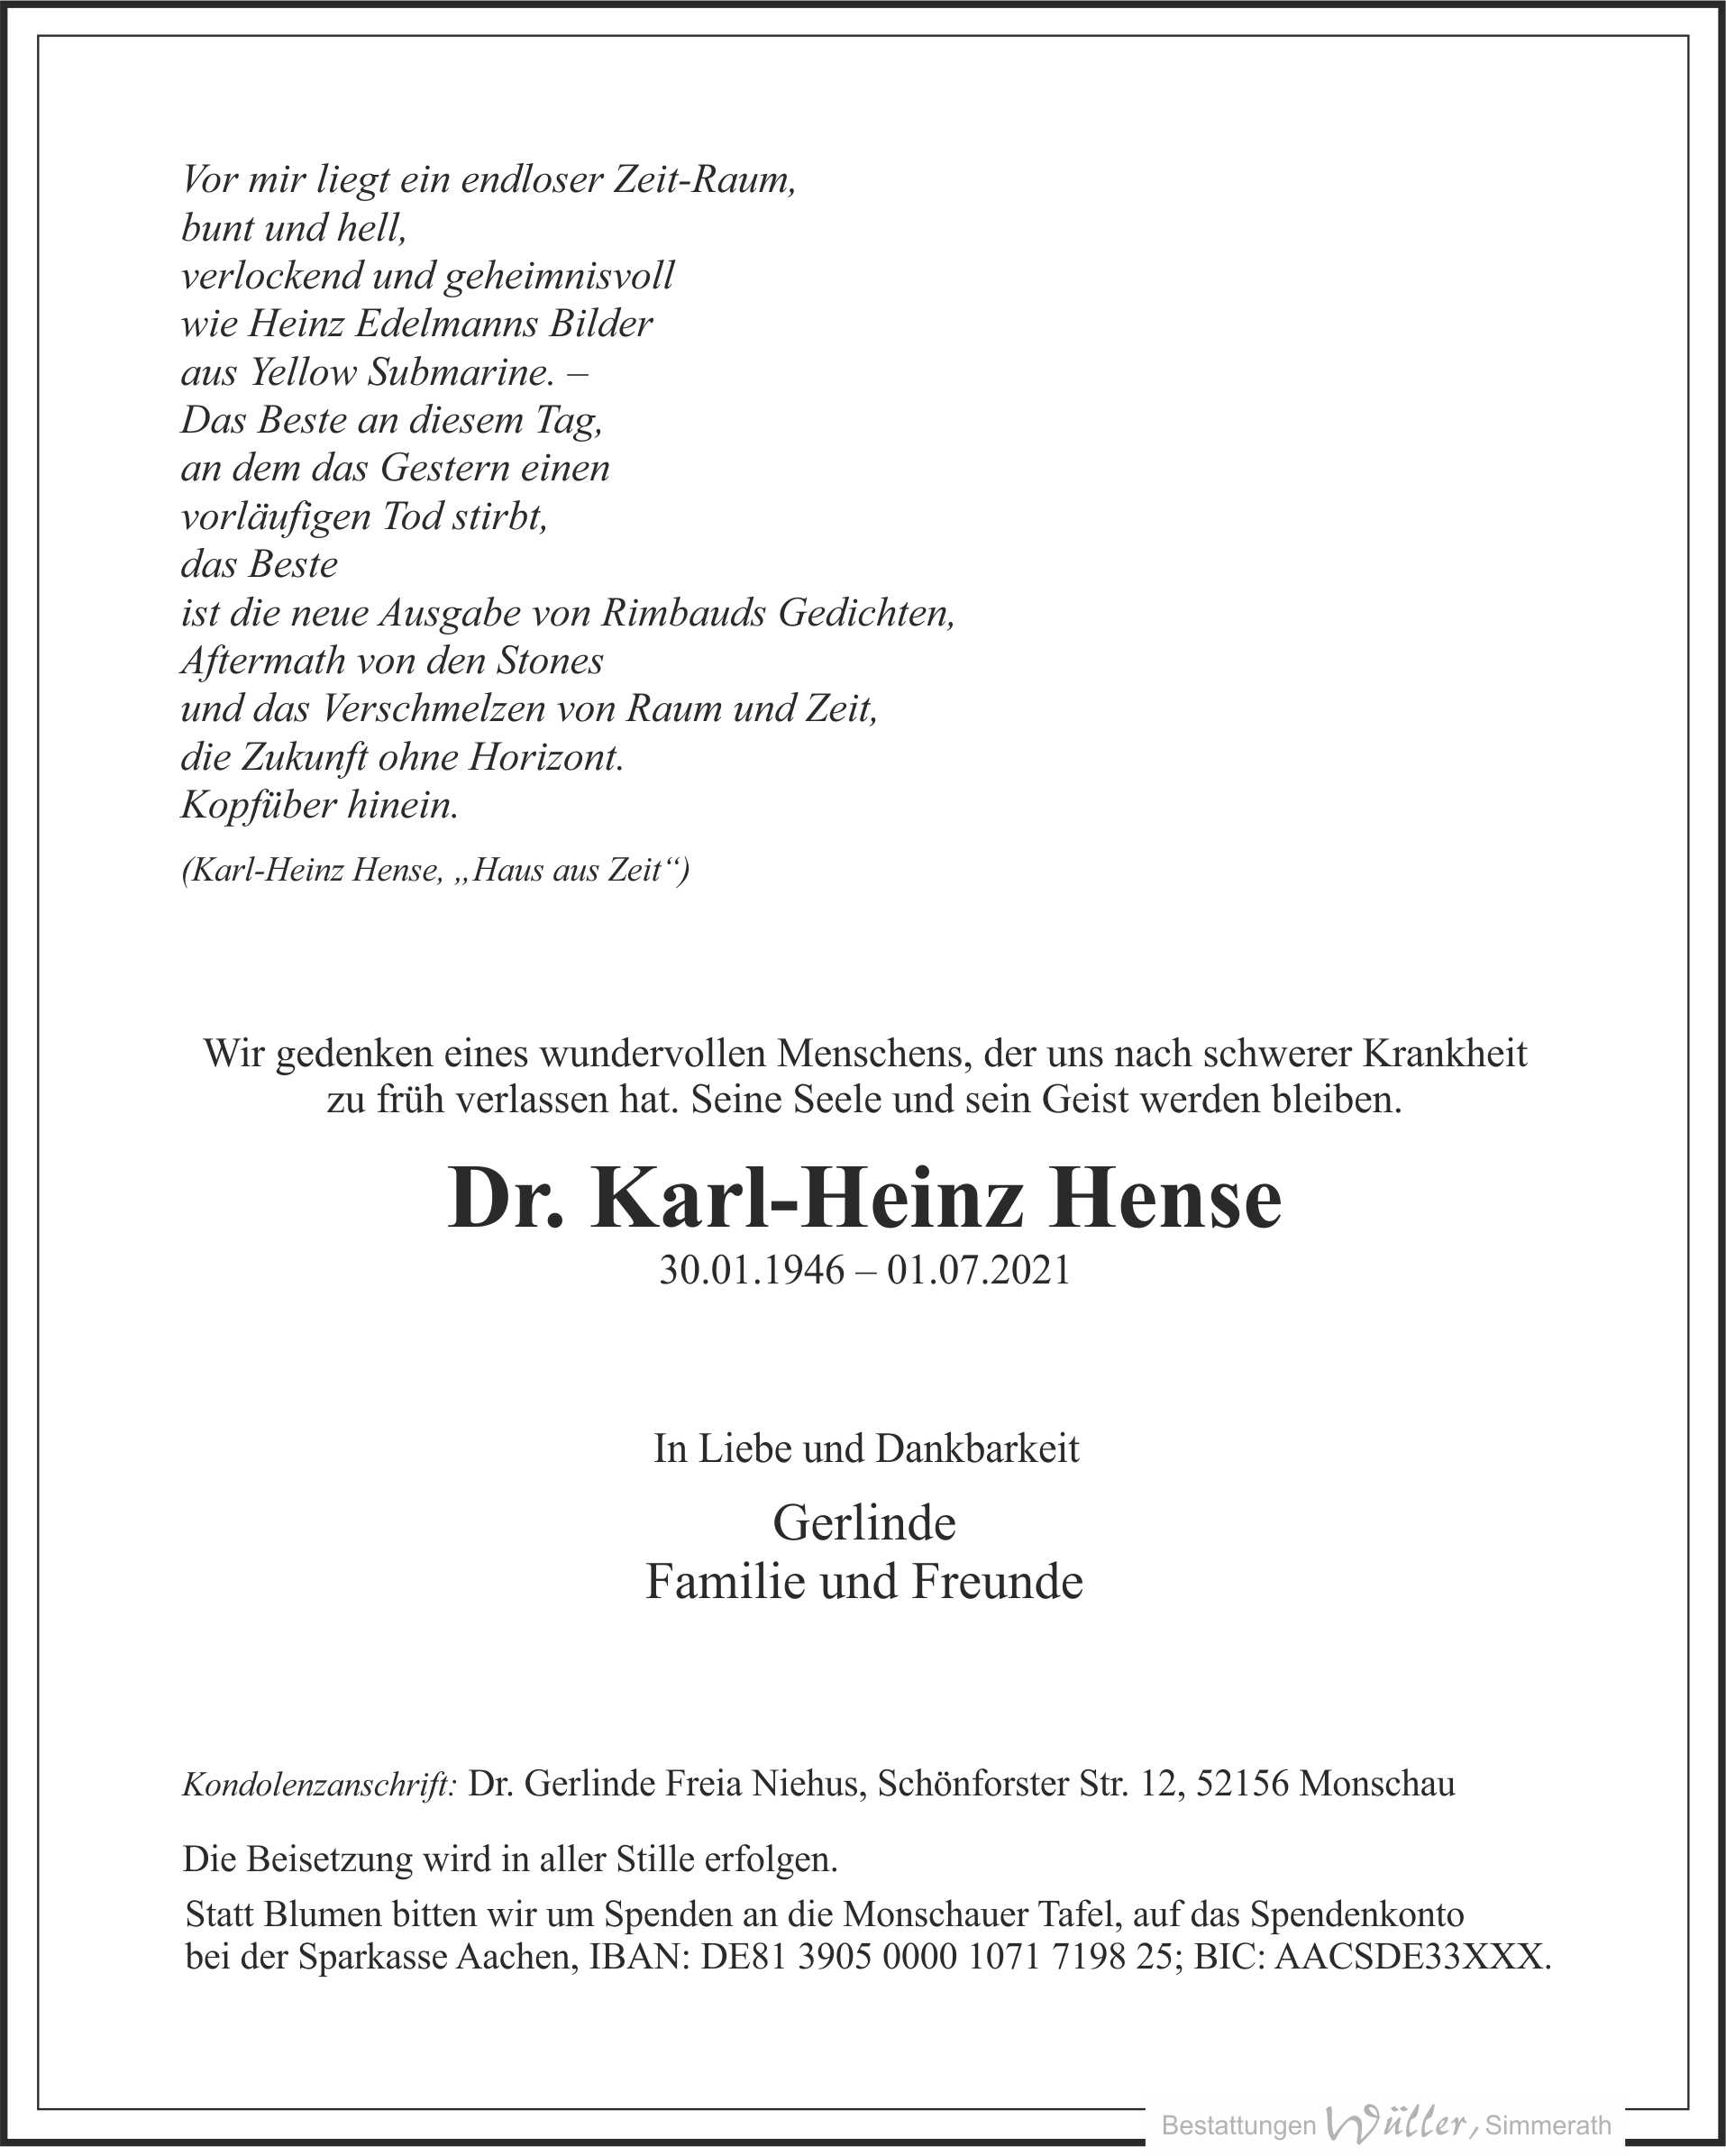 Traueranzeige für Karl-Heinz Hense - Klick zum Vollbild